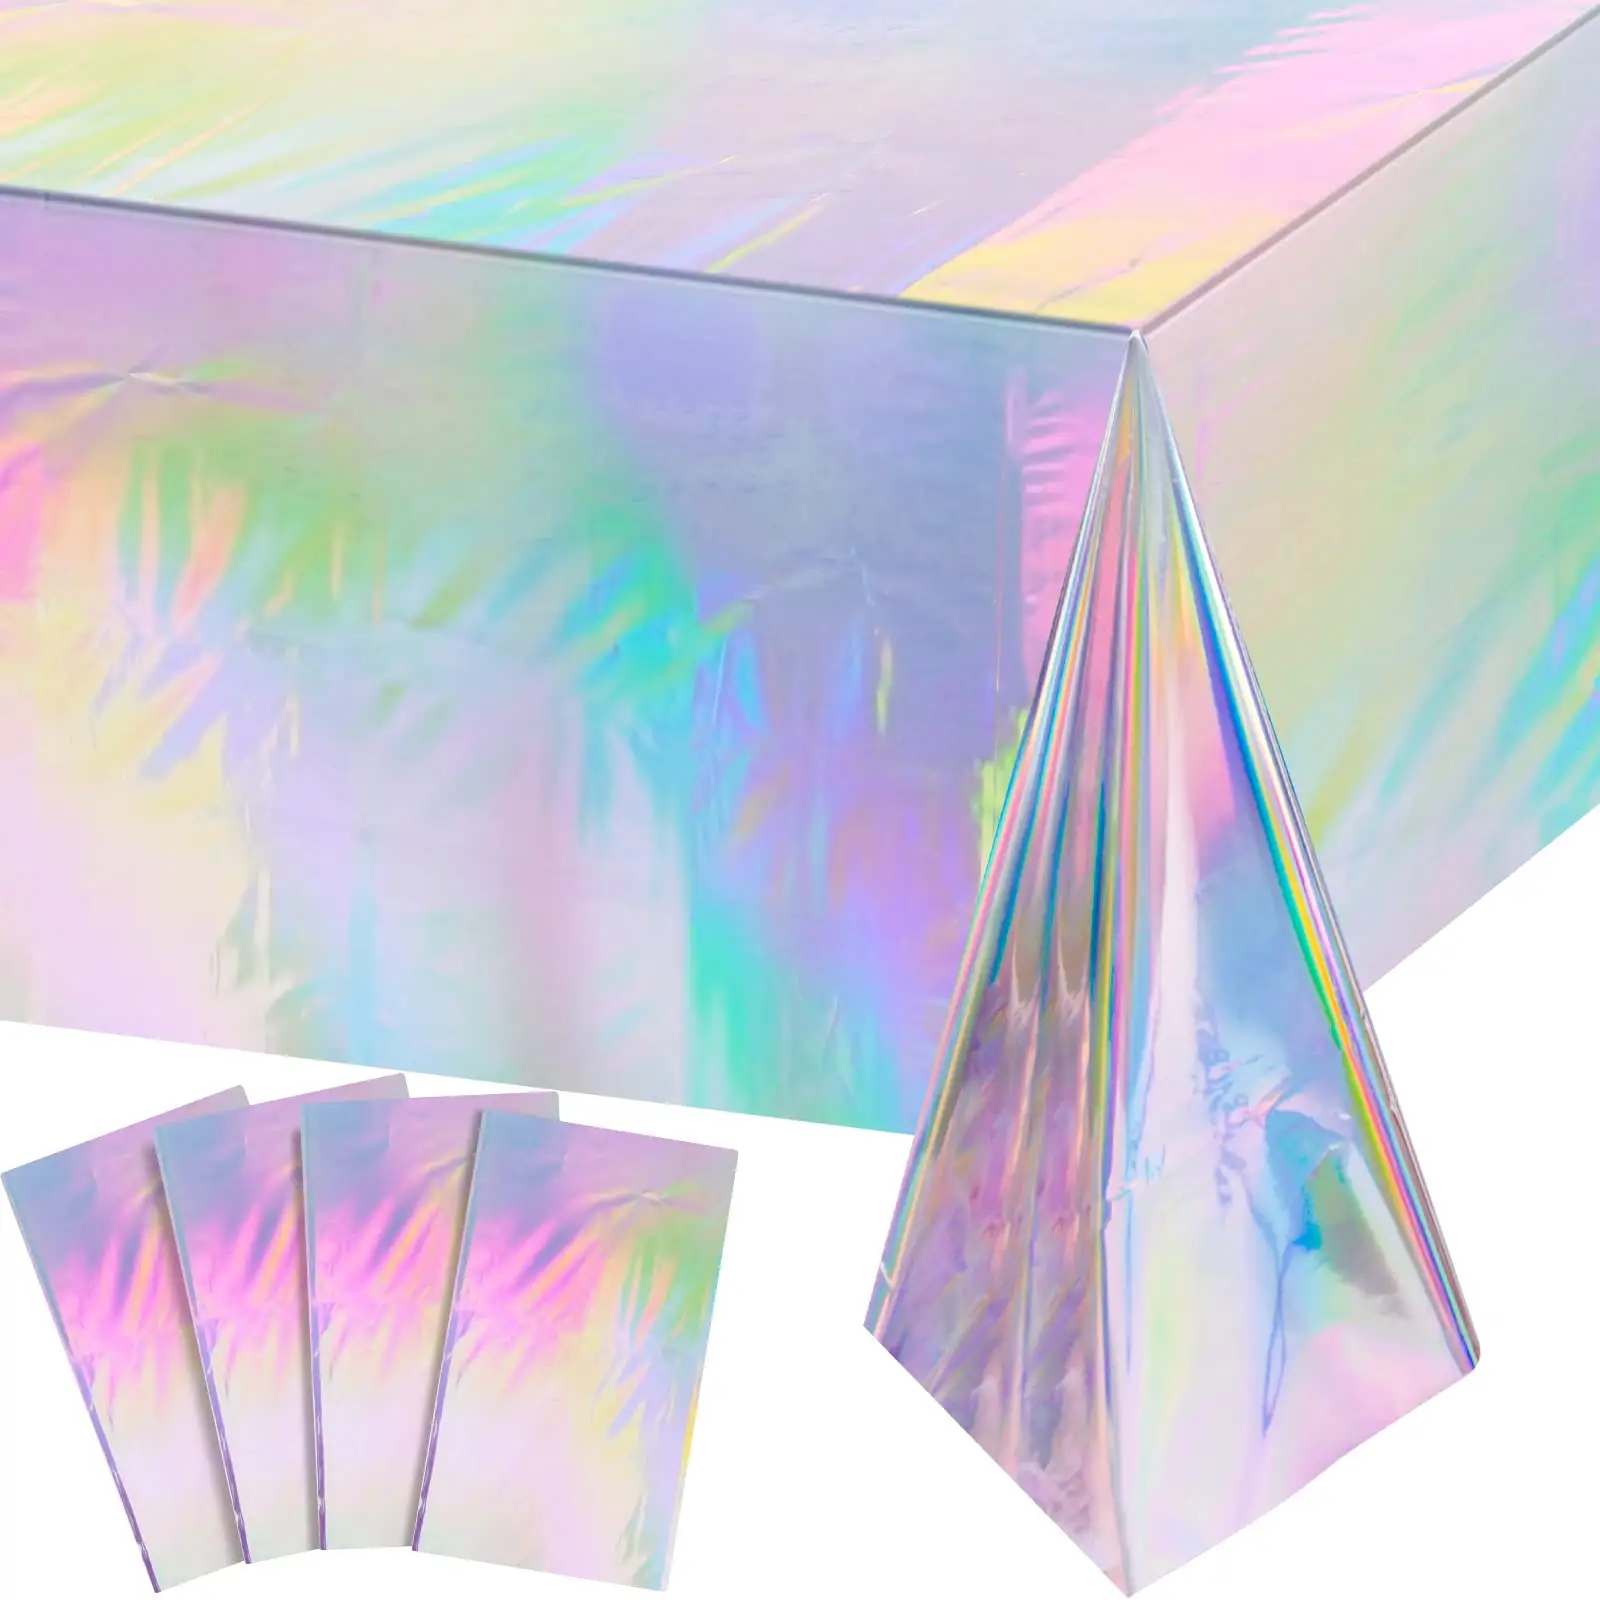 ผ้าปูโต๊ะพลาสติกสีรุ้งเงาทิ้งเลเซอร์สี่เหลี่ยมผืนผ้าโฮโลแกรมฟอยล์ผ้าปูโต๊ะตกแต่งปาร์ตี้สีรุ้ง